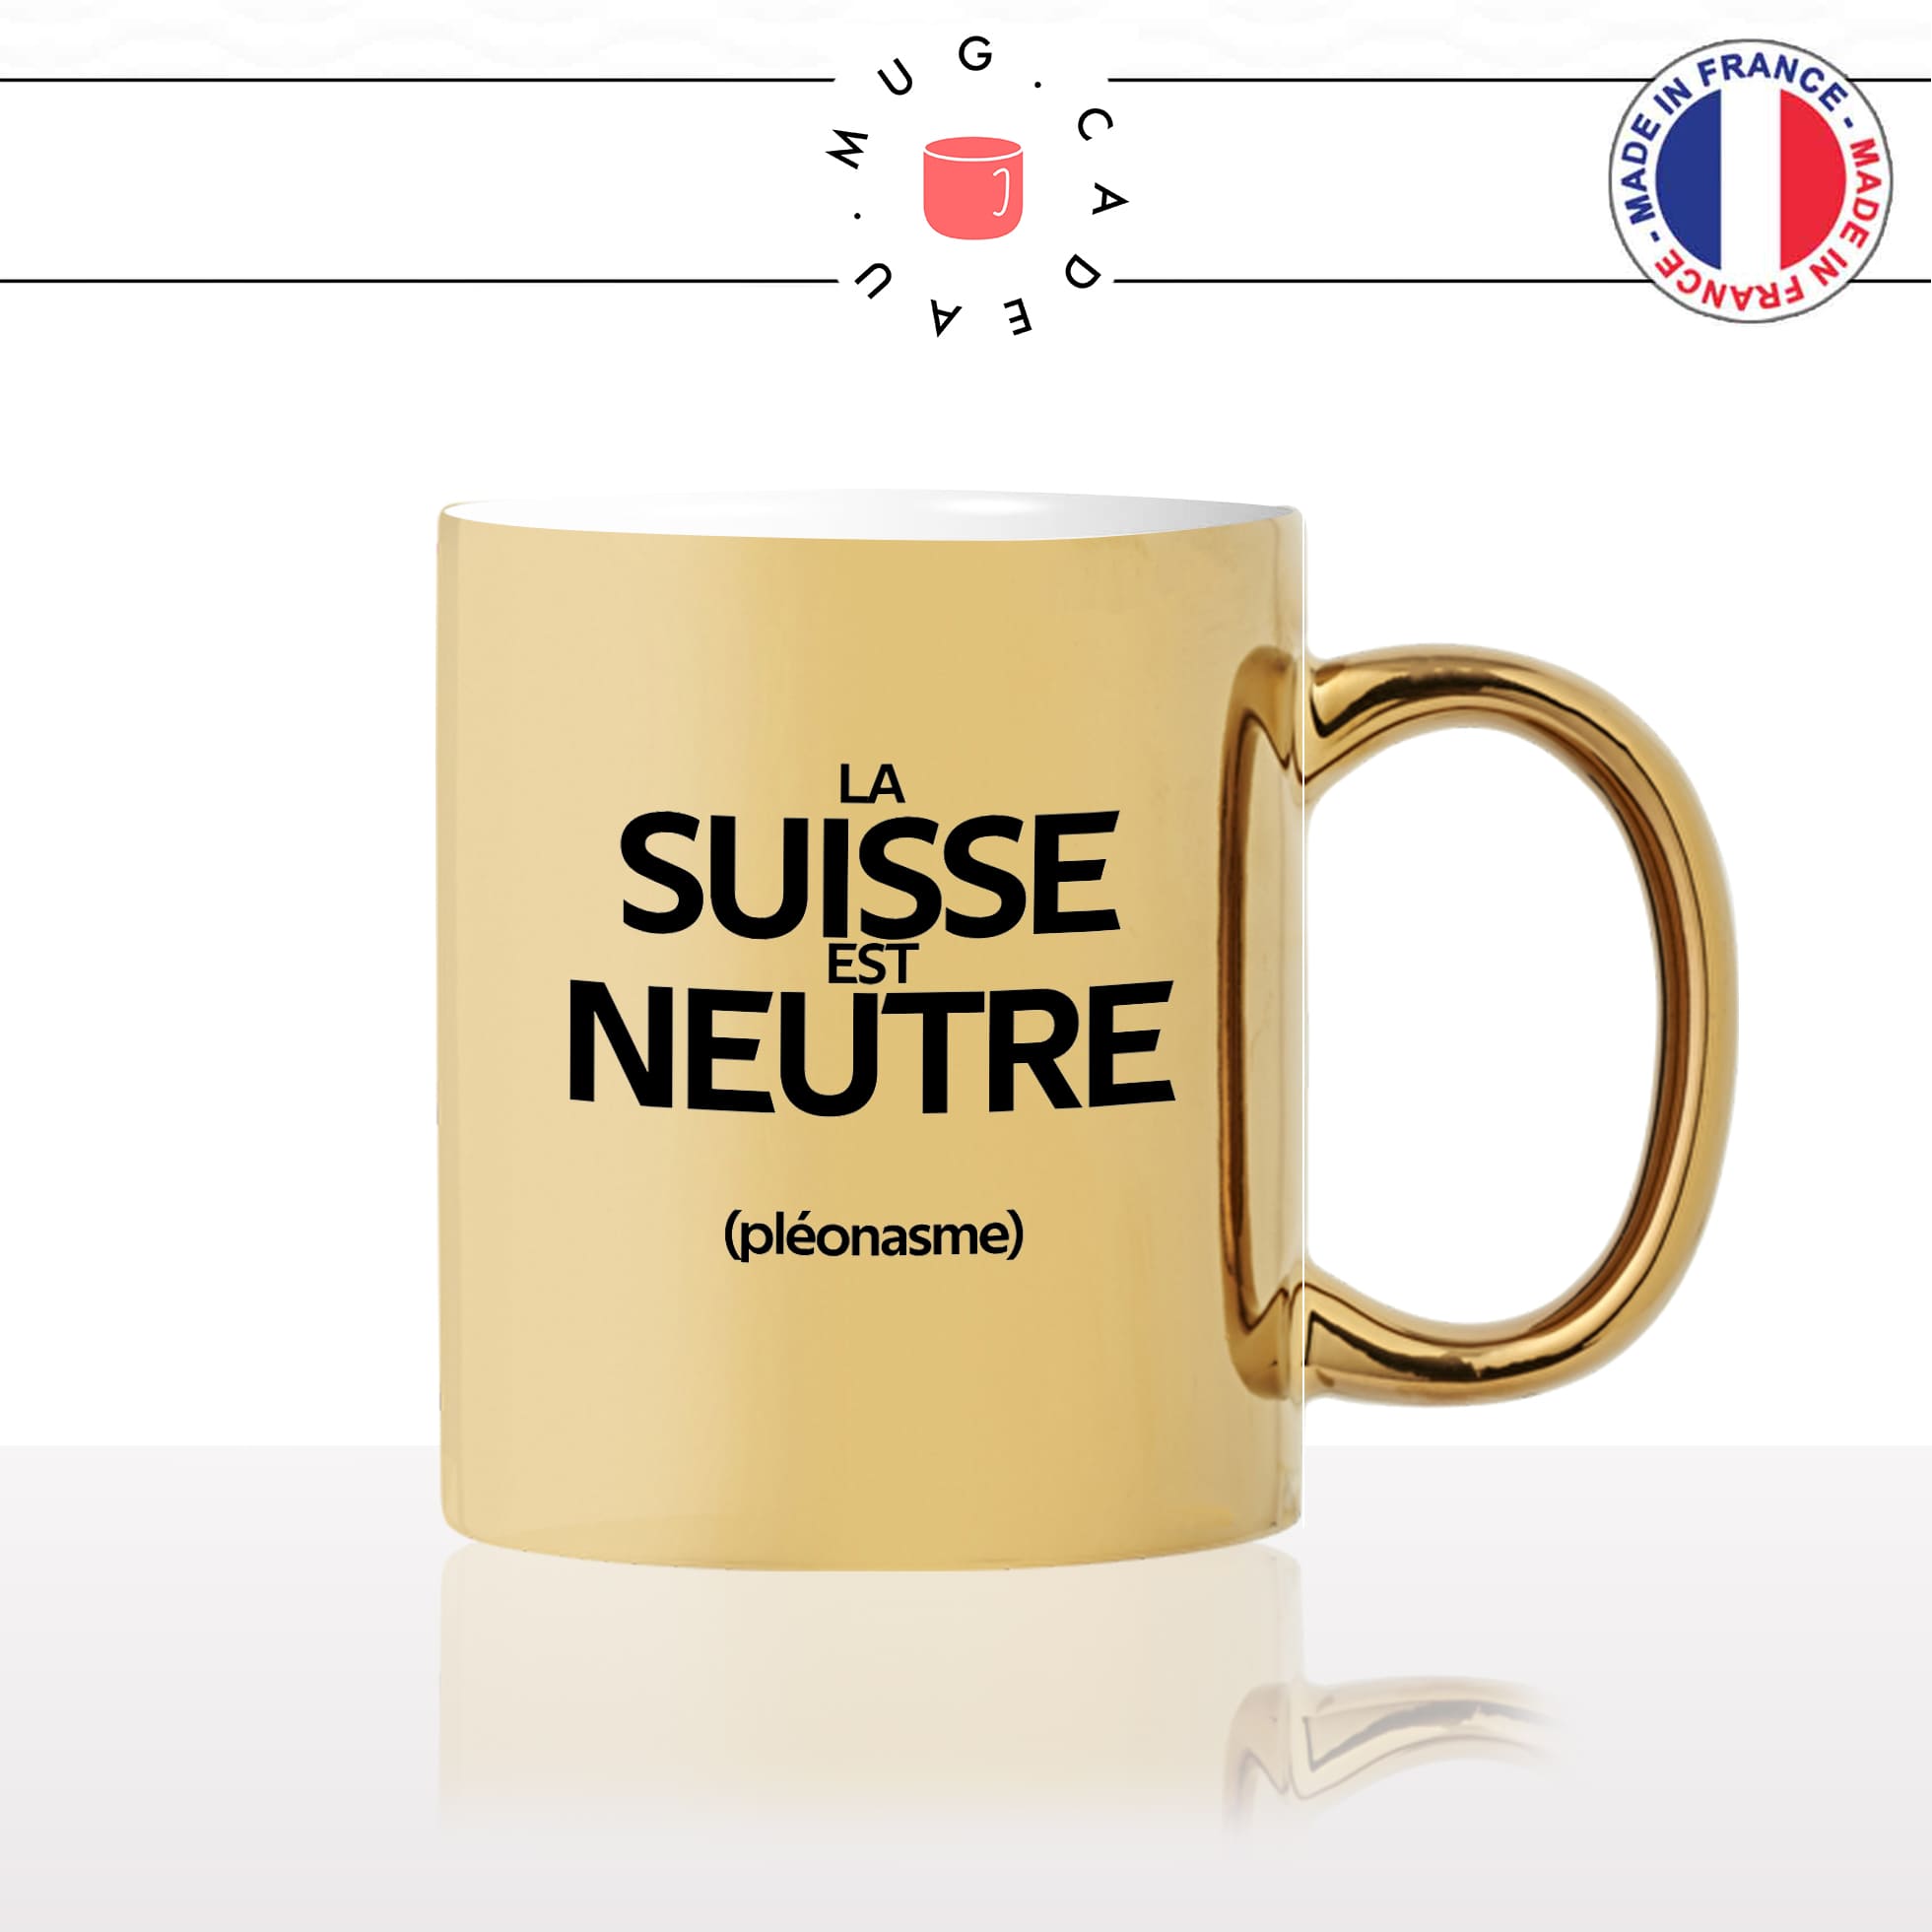 mug-tasse-or-doré-gold-la-suisse-est-neutre-pleonasme-figure-de-style-francais-humour-fun-idée-cadeau-originale-cool2